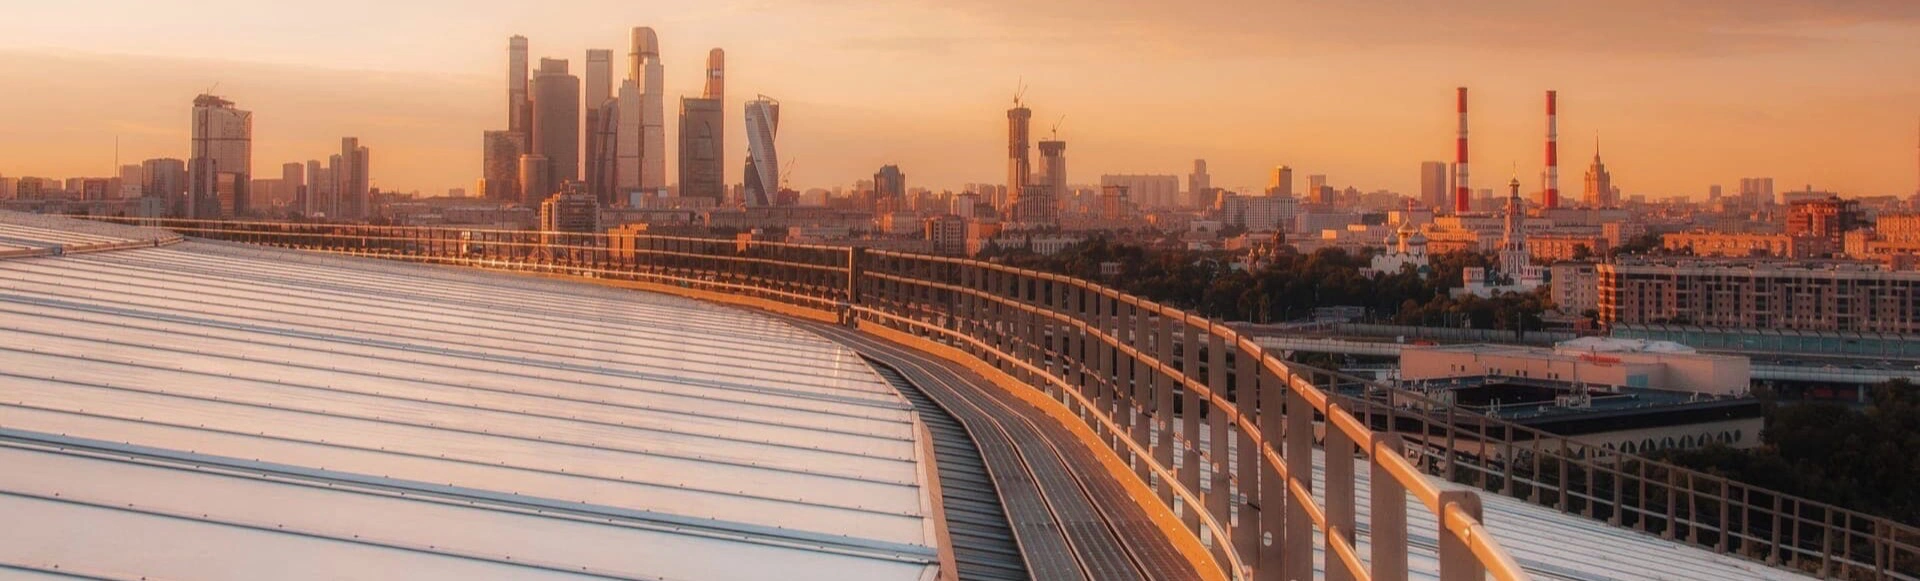 Поднимитесь на крышу главного стадиона страны, и вас ждет уникальная возможность собрать взглядом весь бескрайний пейзаж столицы с высоты птичьего полета в Москве.